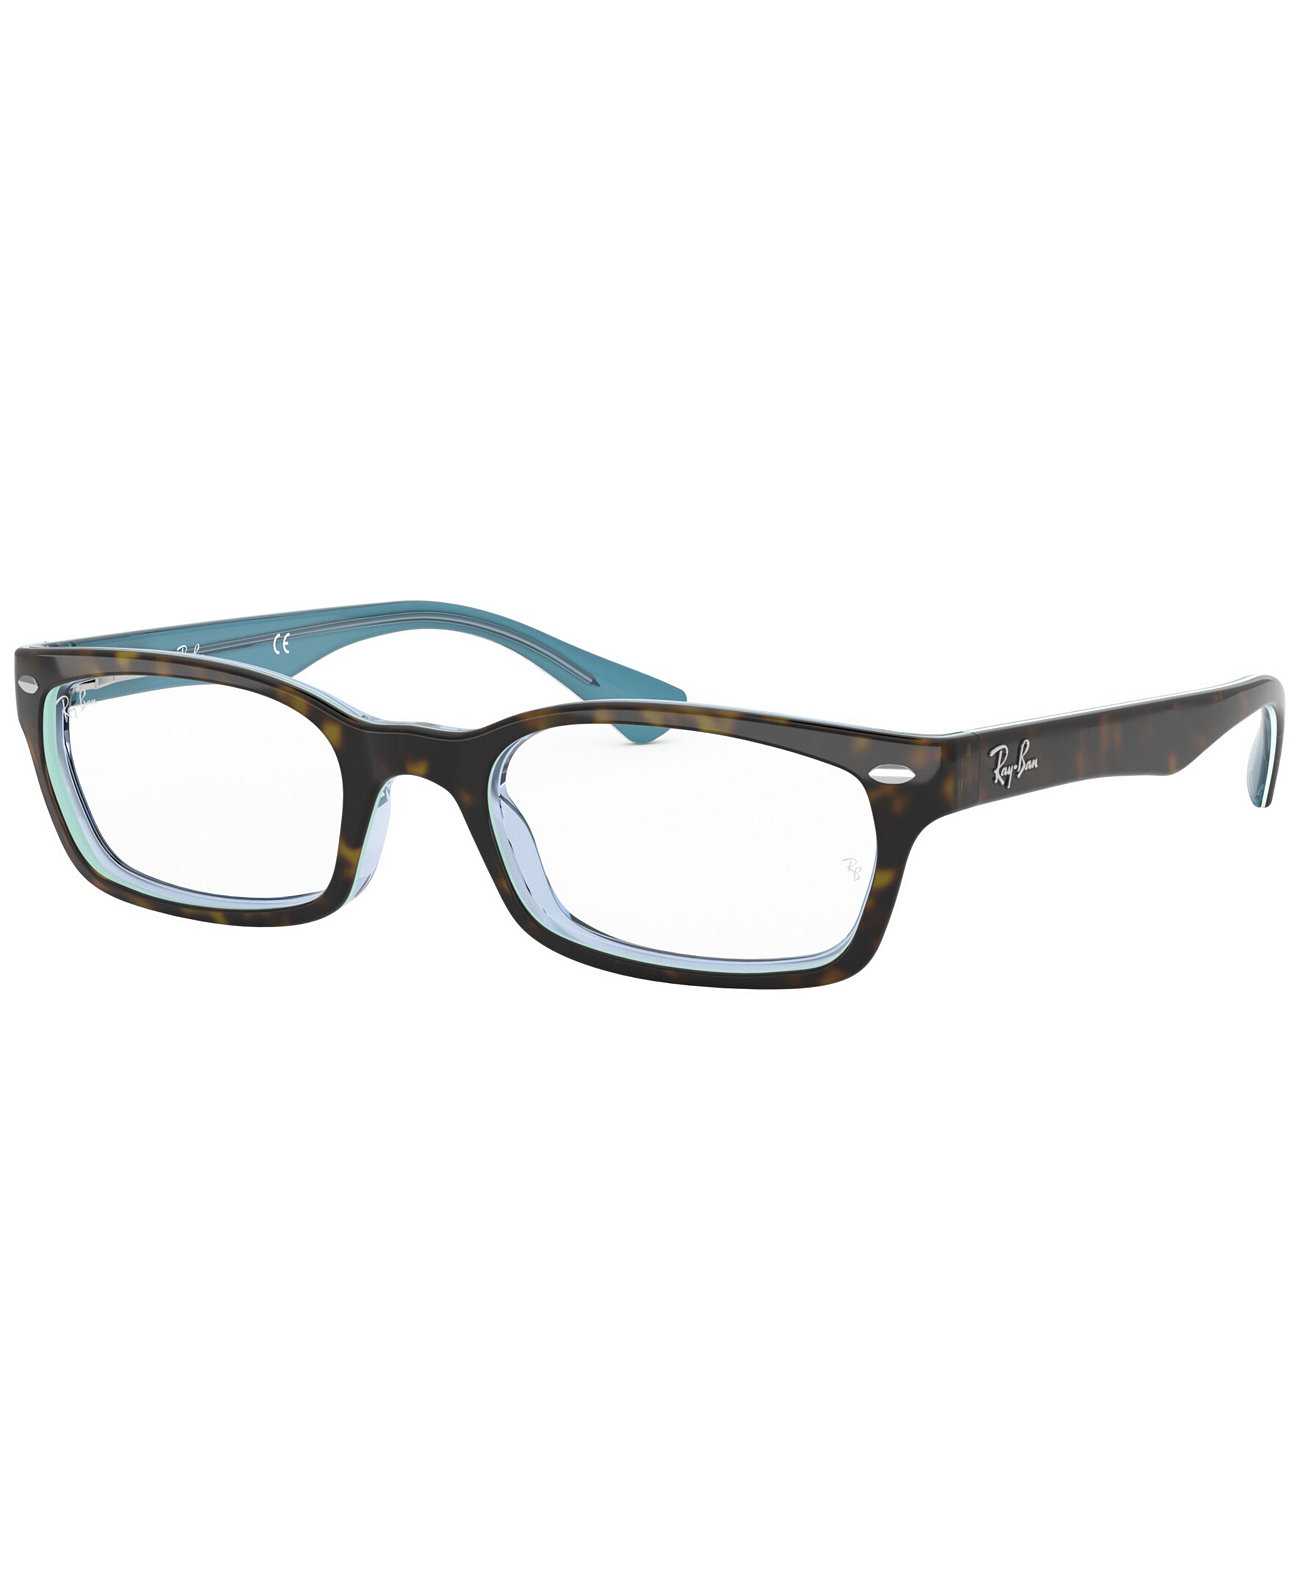 Прямоугольные очки унисекс RX5150 Ray-Ban